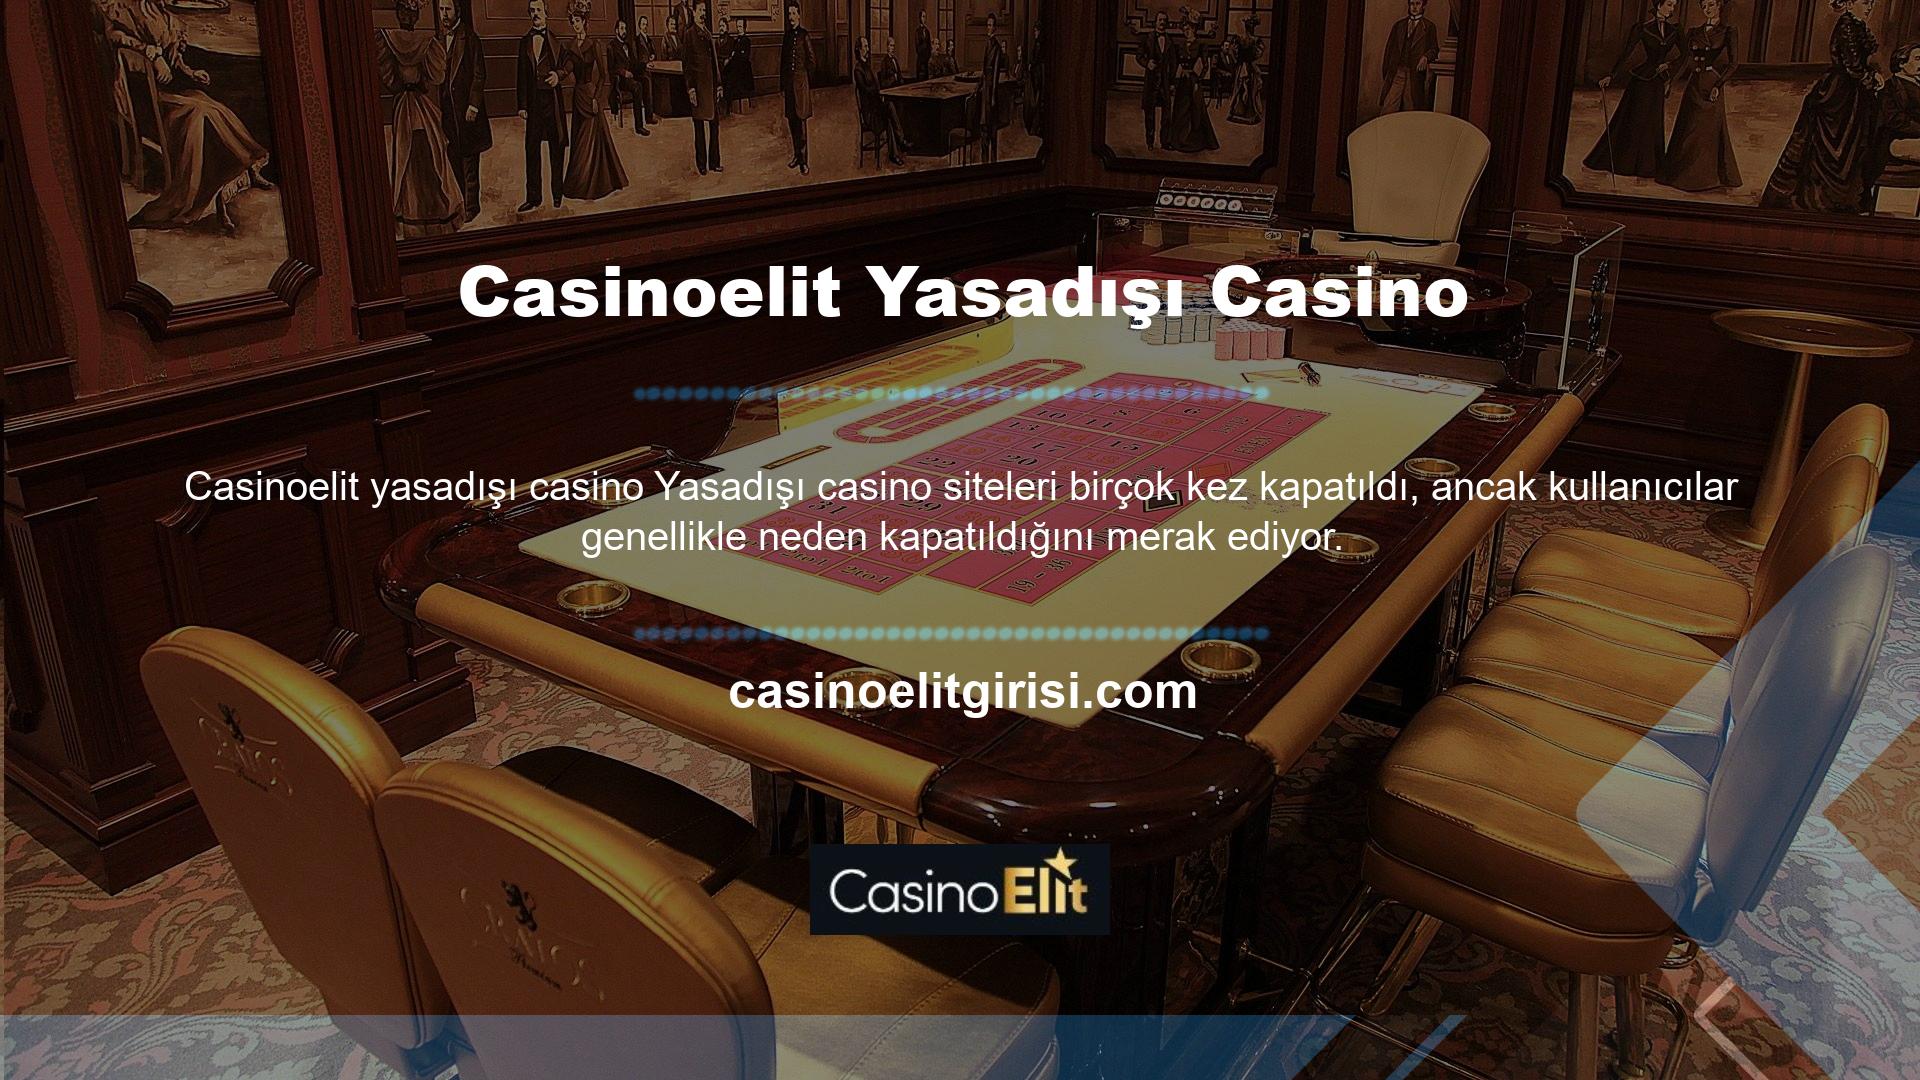 Casinoelit neden kapatıldı? Oyun Sitesinin Kapatılma Nedenleri; Oyun Sitesi, ülkemizde hizmet verdiği süre boyunca kullanıcılara lisanslı hizmet vermeyecektir